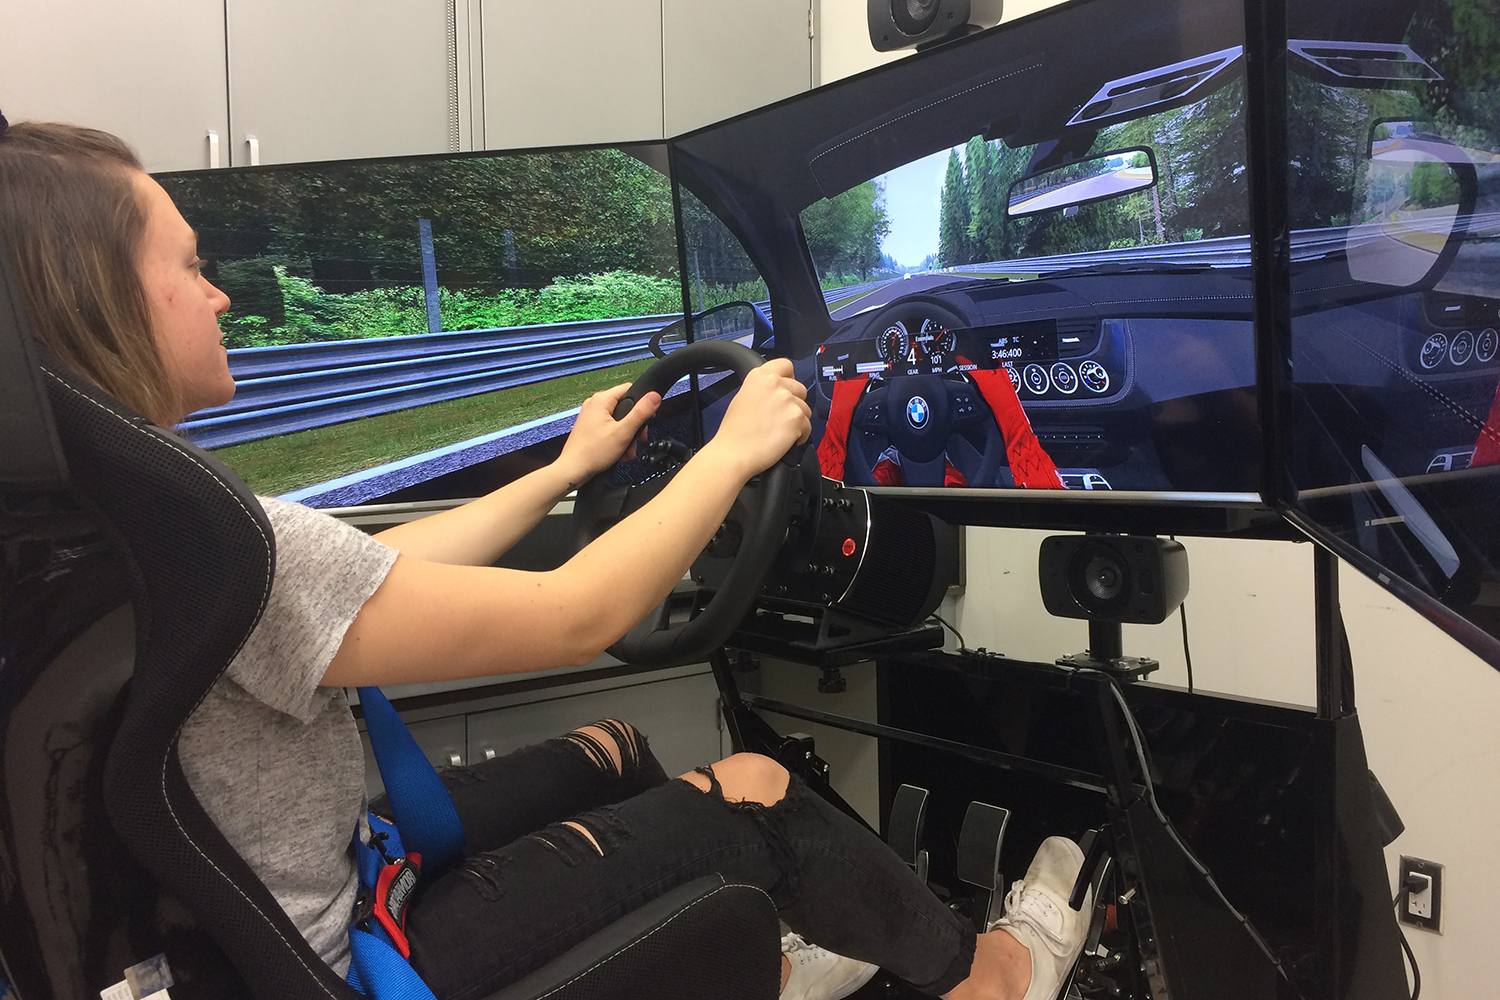 Real Car Driving Simulator & Parking 2022 Games - Metacritic